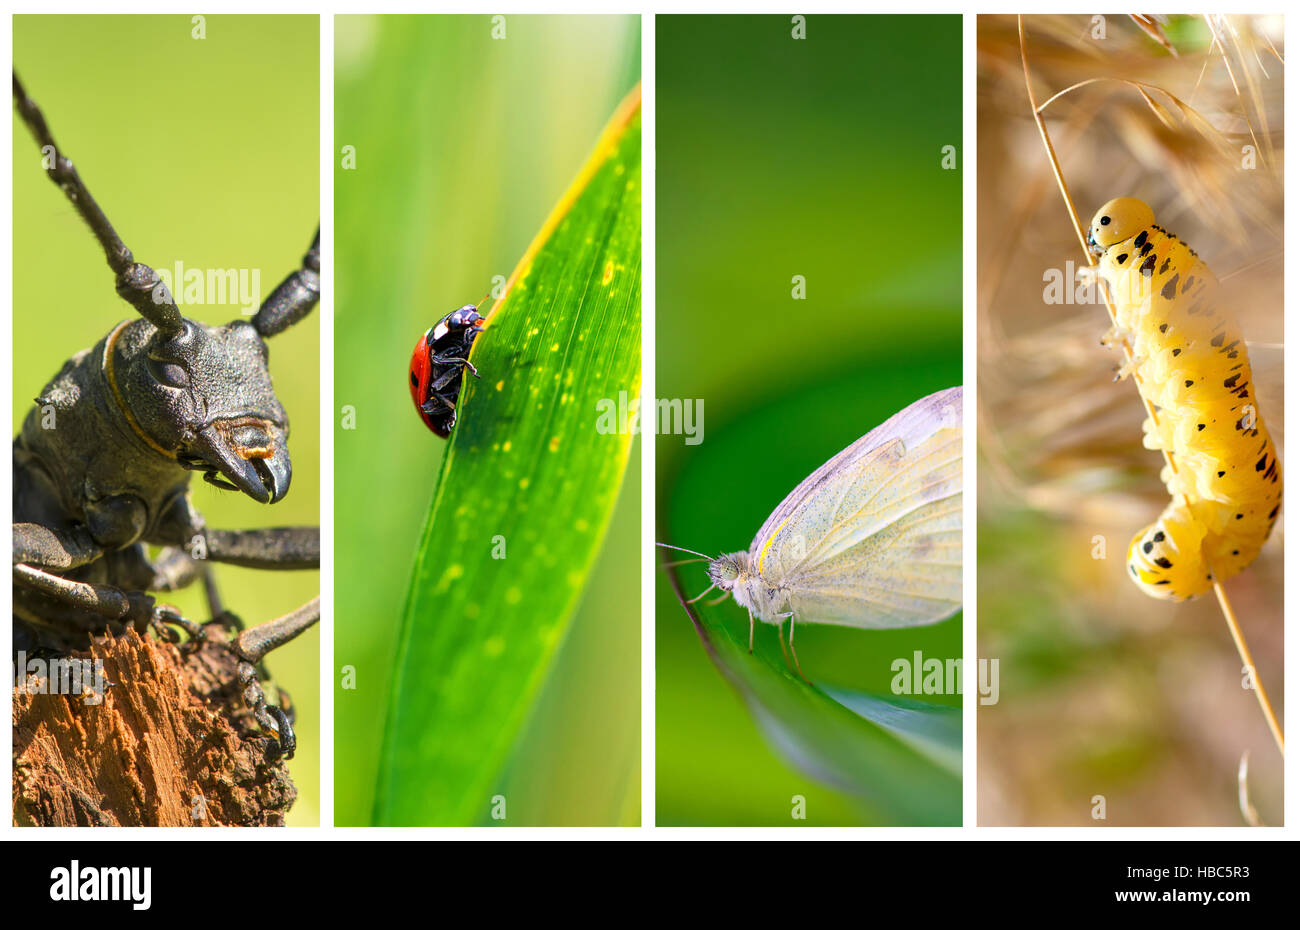 Collage de fotos con diferentes tipos de insectos Foto de stock